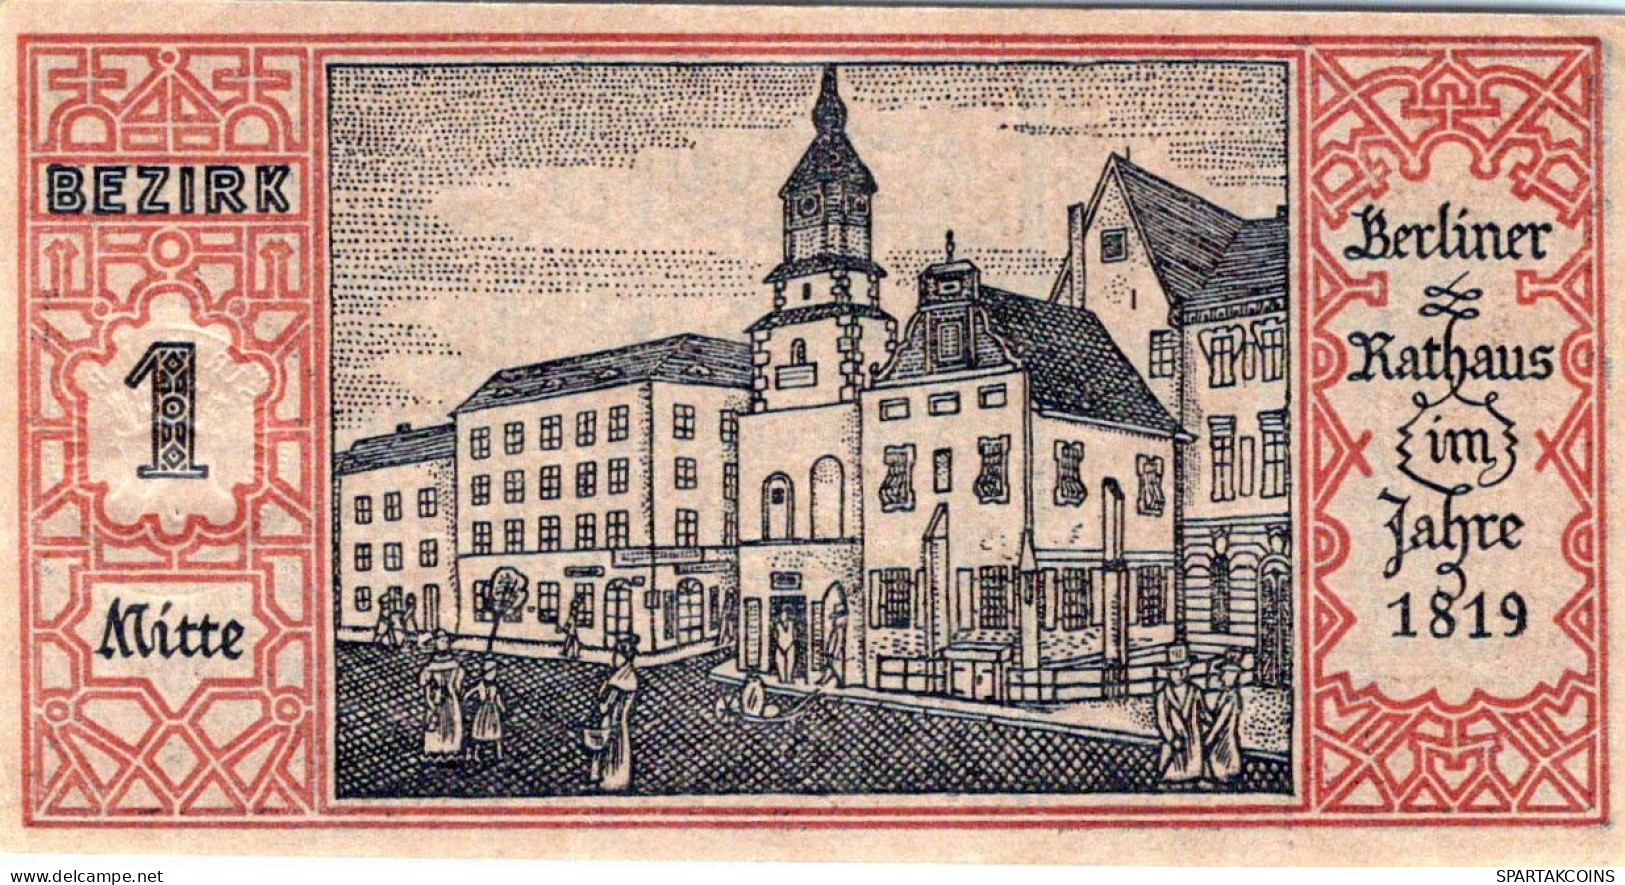 50 PFENNIG 1921 Stadt BERLIN UNC DEUTSCHLAND Notgeld Banknote #PA177 - [11] Lokale Uitgaven